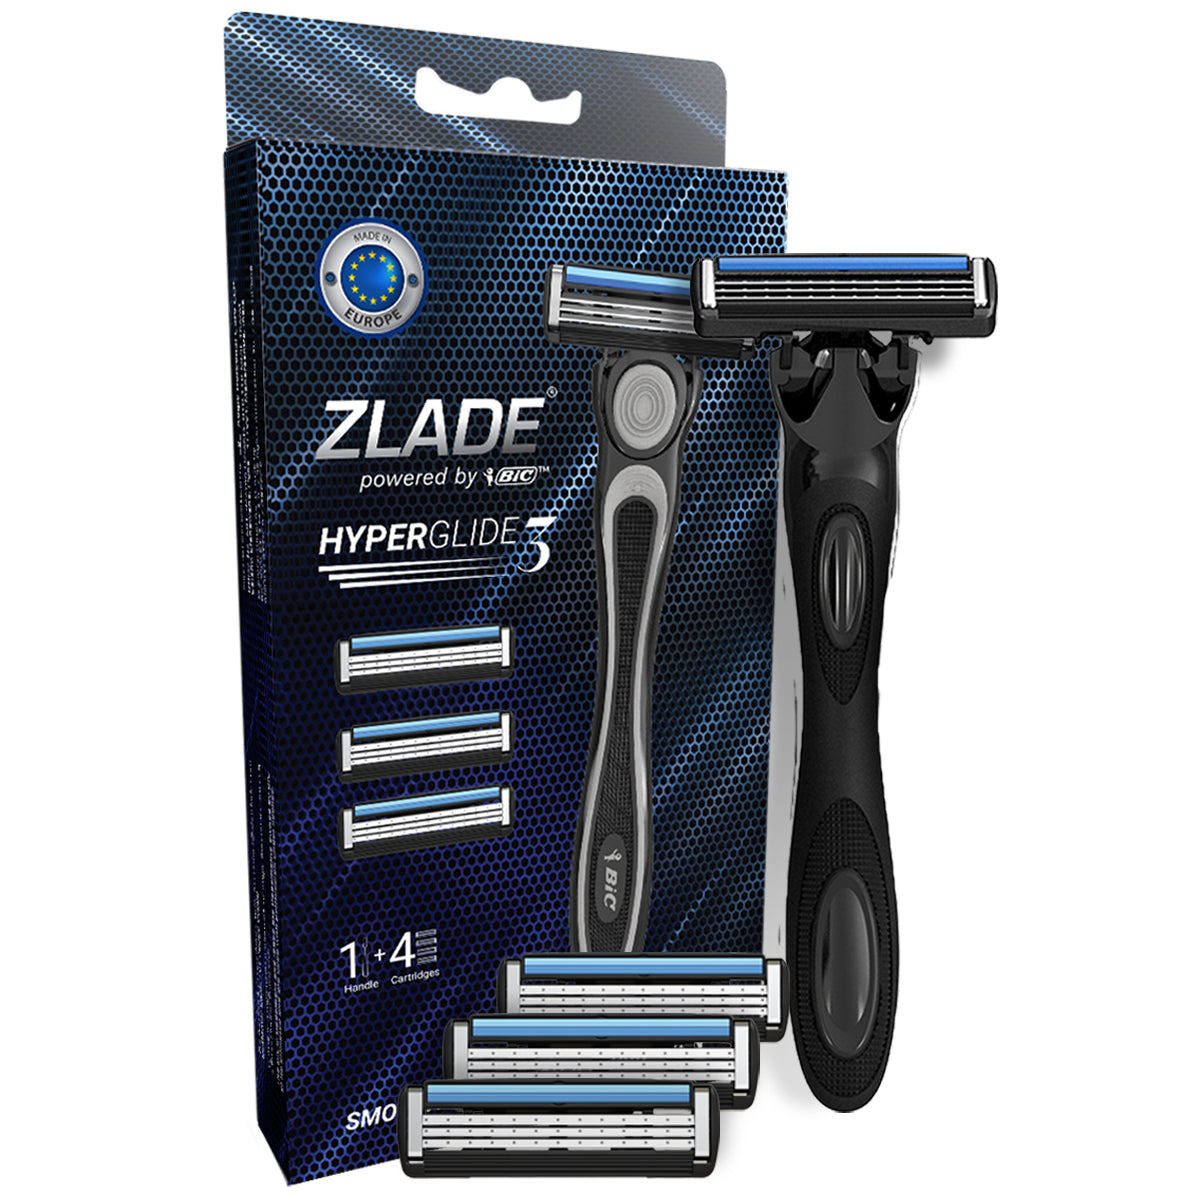 Zlade Ballistic Lite Trimmer & Zlade HyperGlide3 Shaving Razor-Cartridge Combo